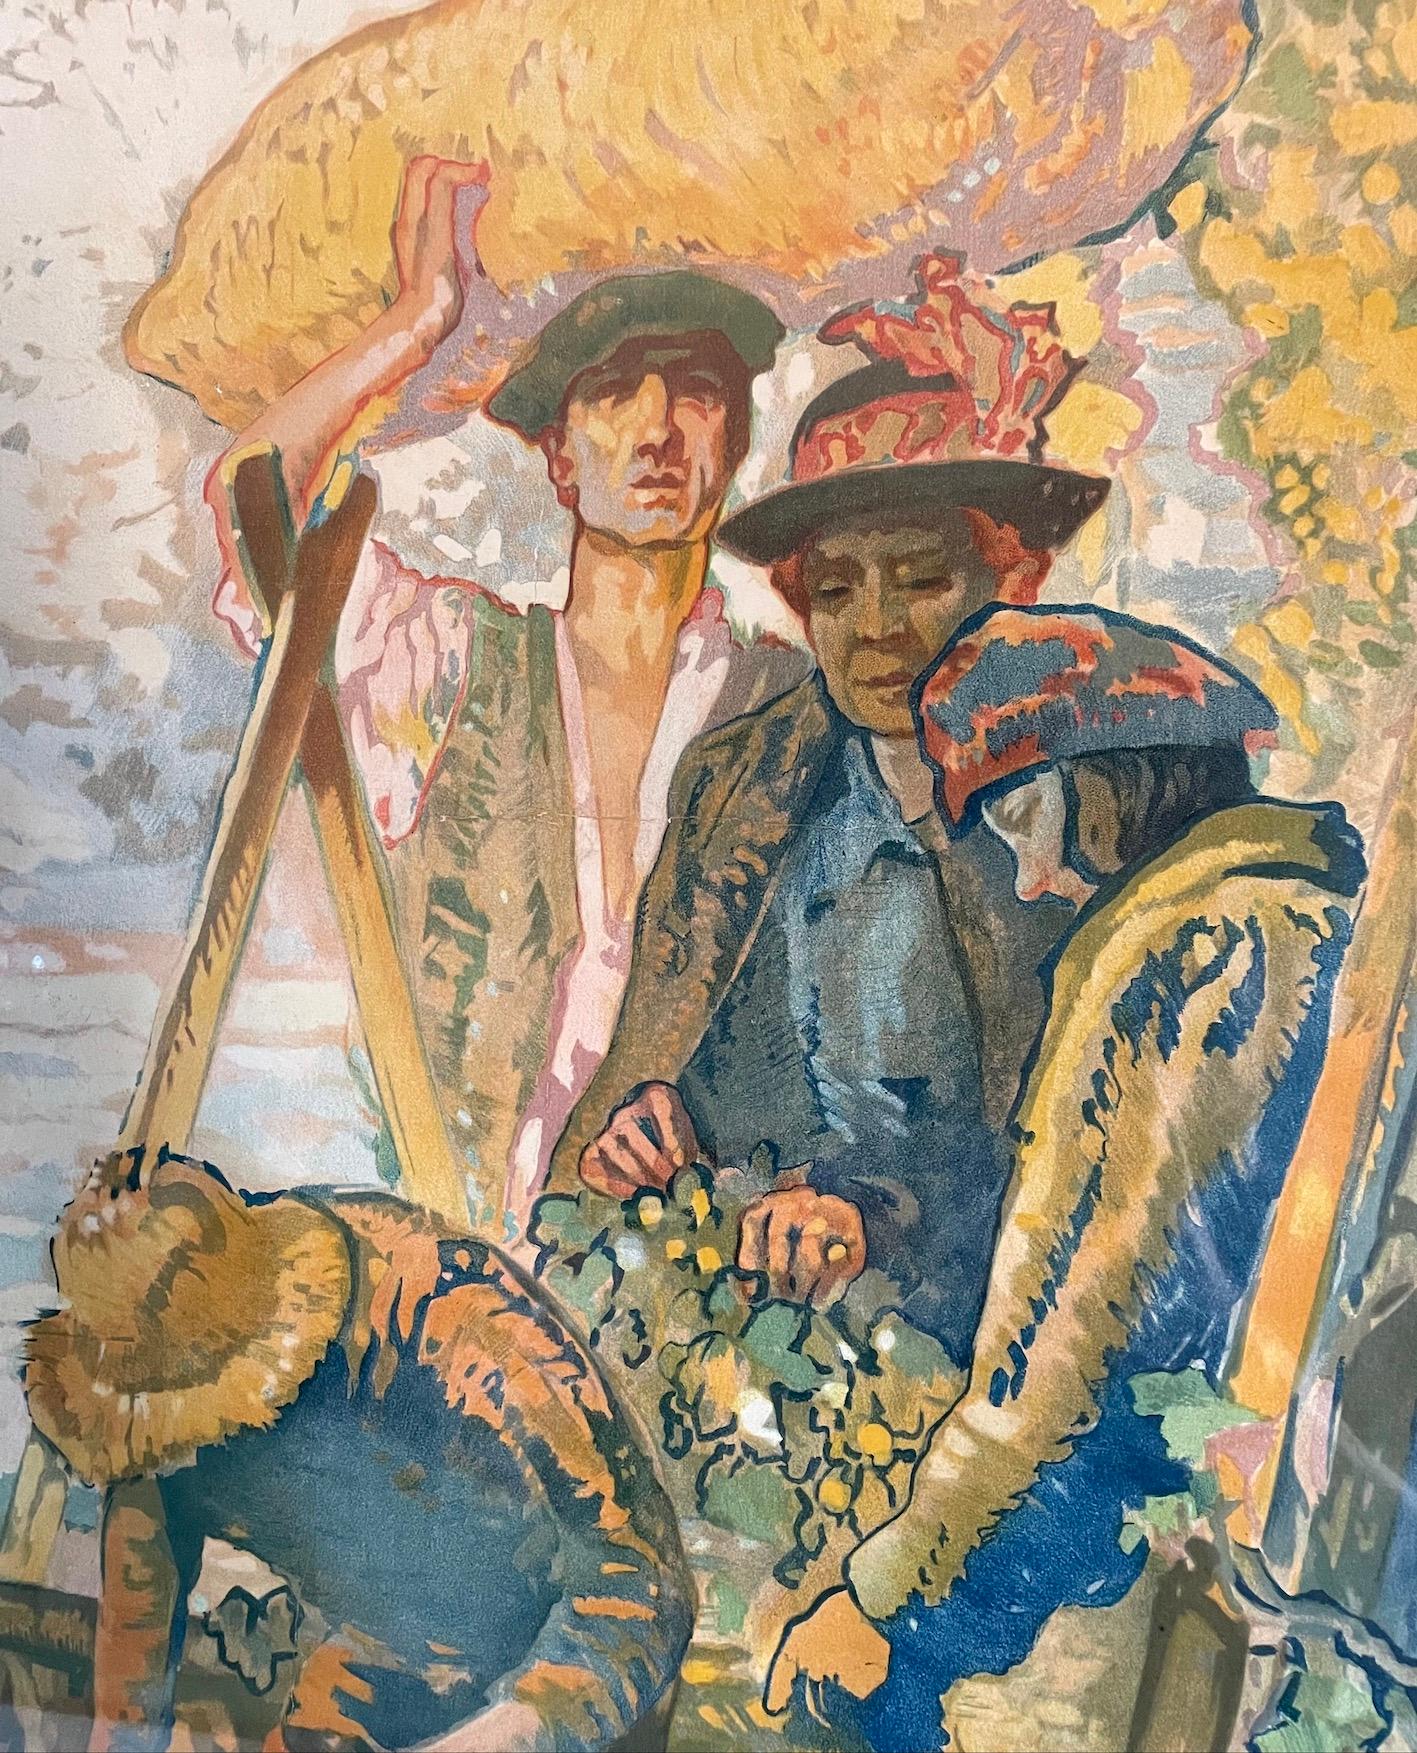 Affiche publicitaire vintage originale encadrée en bois représentant
Les cueilleurs de houblon dans le Kent n° 5
Image colorée de fermiers et d'une femme tenant un bébé, avec en arrière-plan des maisons traditionnelles du Kent.
Lithographie en